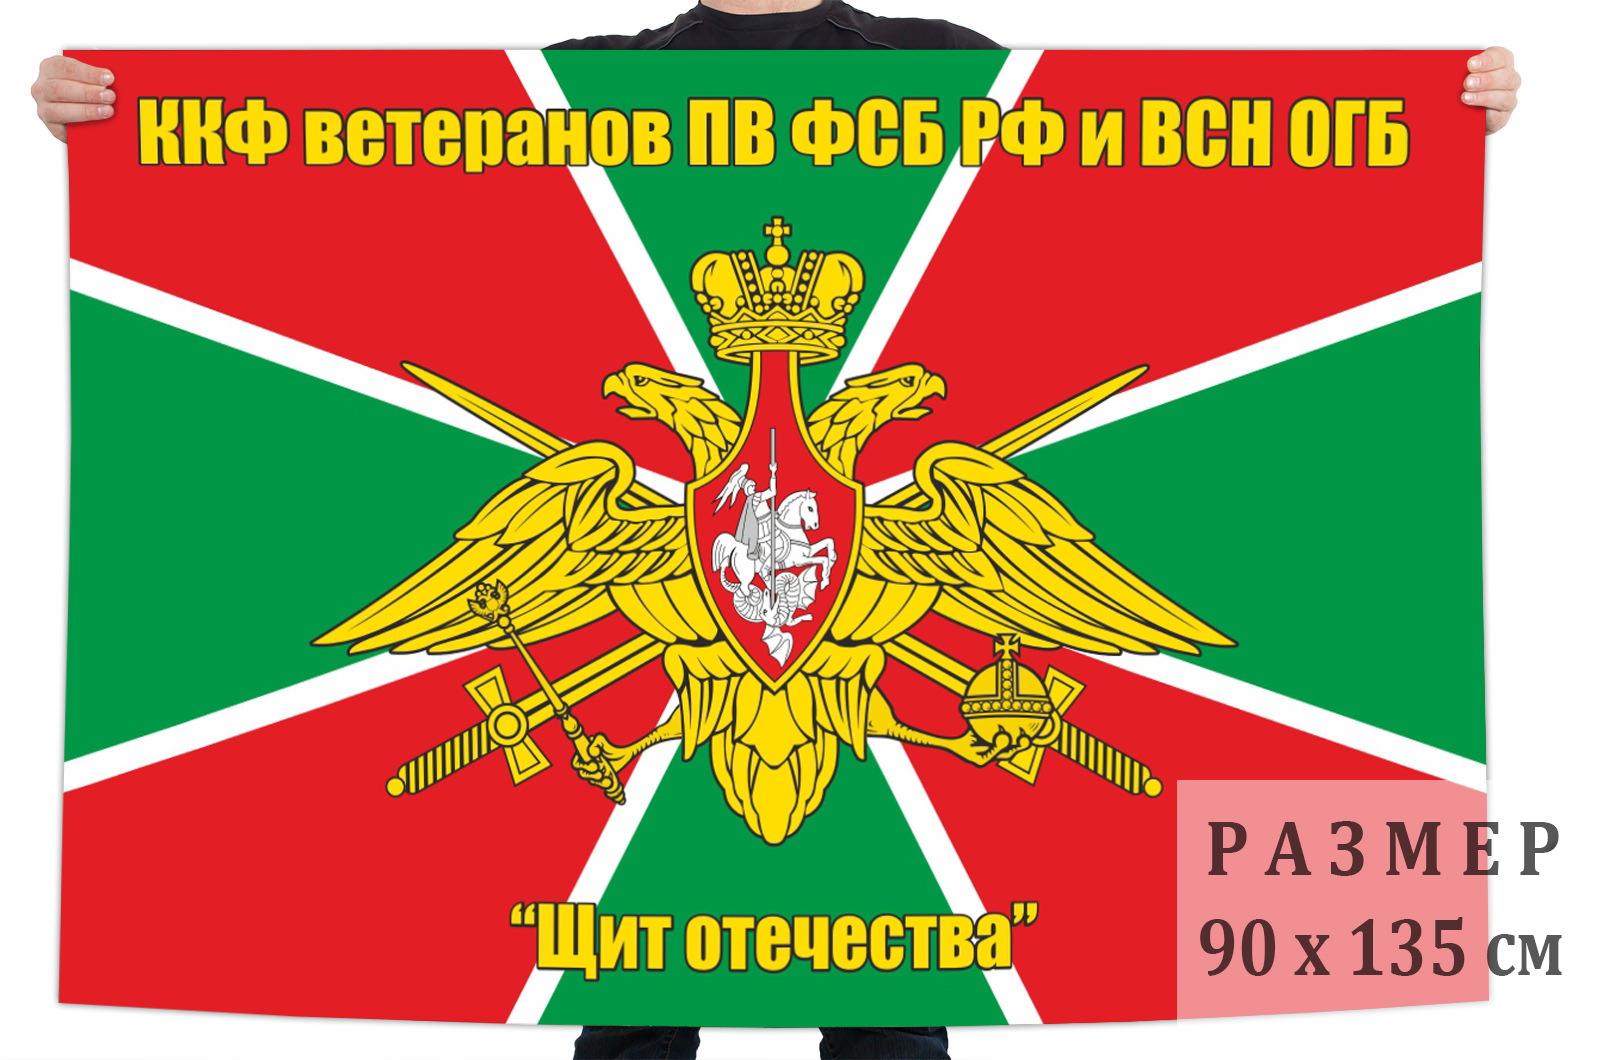 Флаг ККФ ветеранов ПВ и ВСН ОГБ "Щит Отечества"